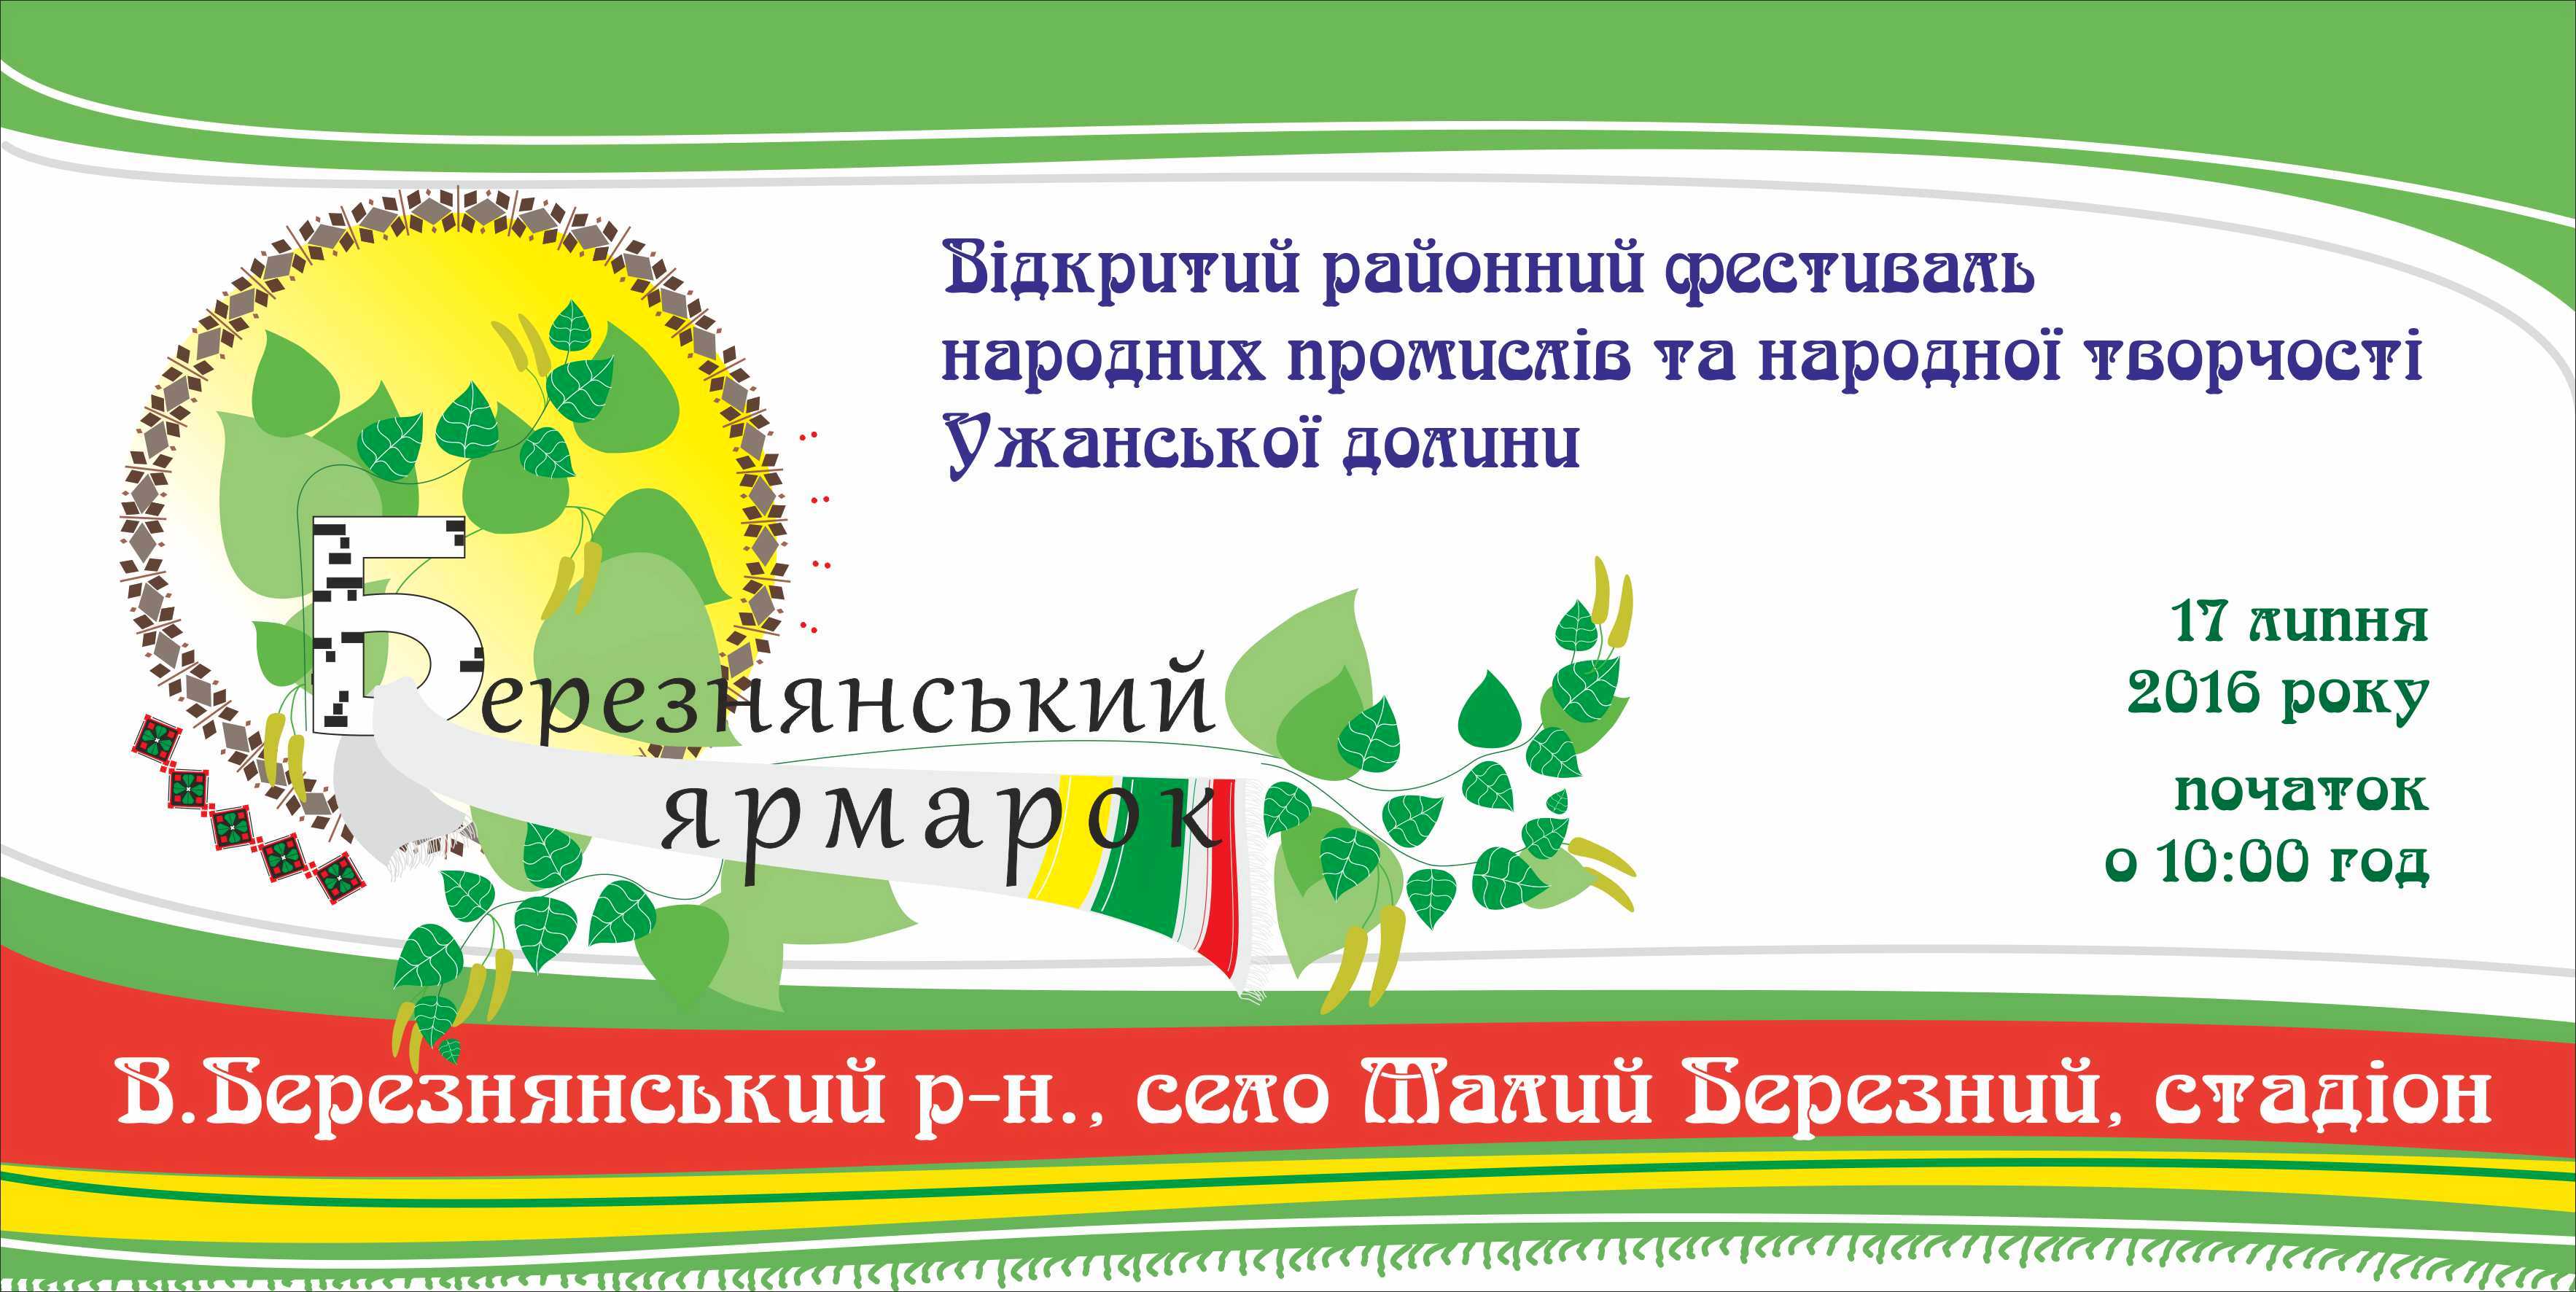 17 липня на Великоберезнянщині вперше відбудеться відкритий районний фестиваль народних промислів та народної творчості 